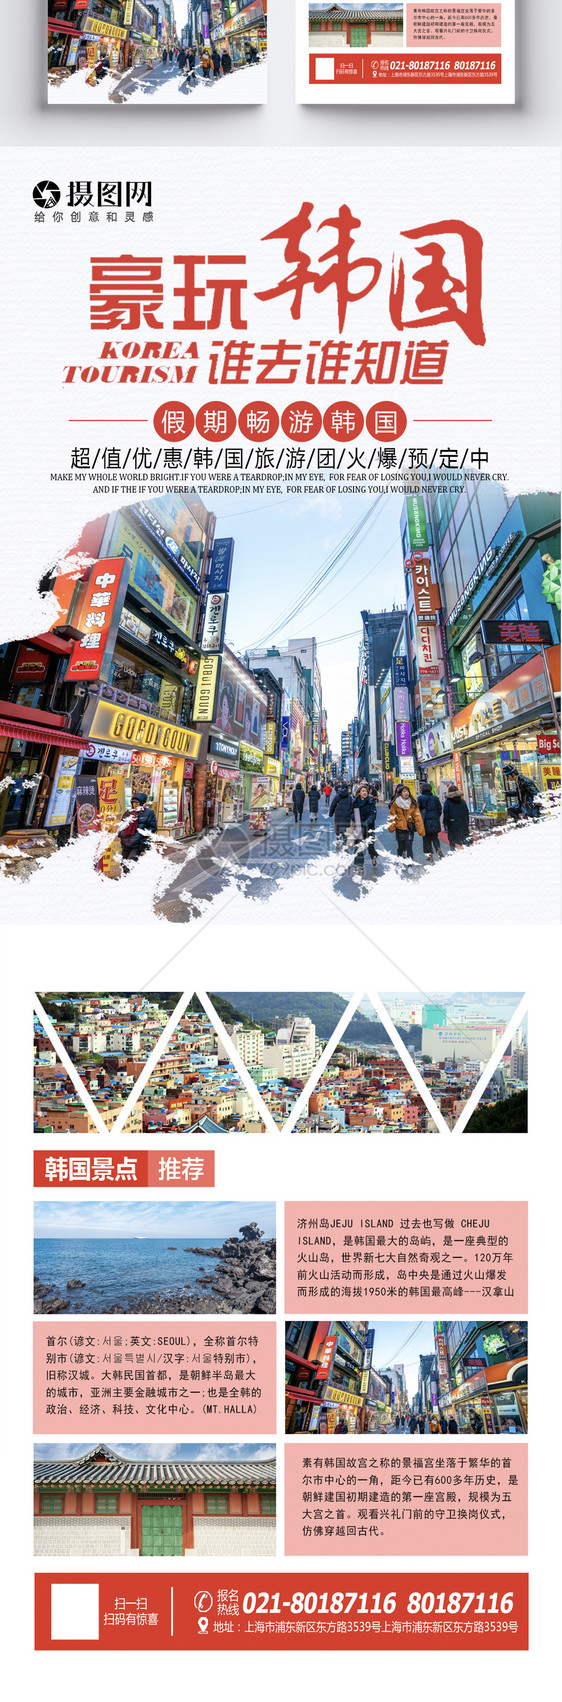 韩国旅游宣传单图片